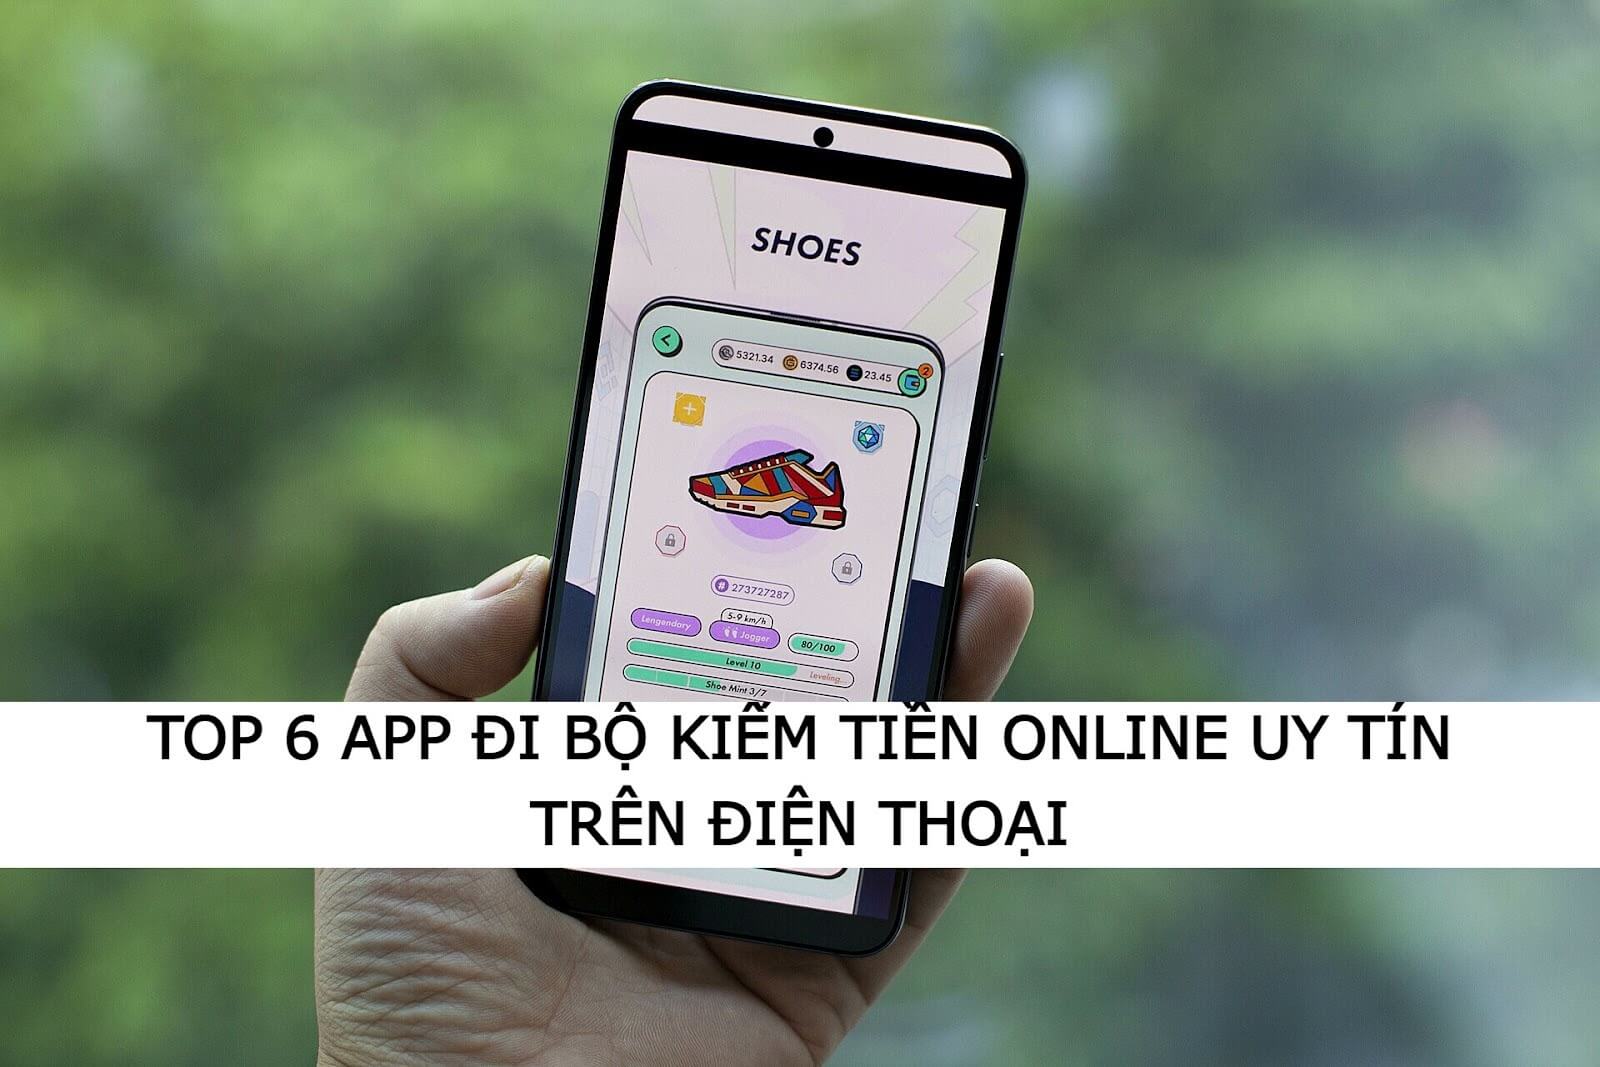 Top 6 app đi bộ kiếm tiền online trên điện thoại uy tín nhất - Digi Việt